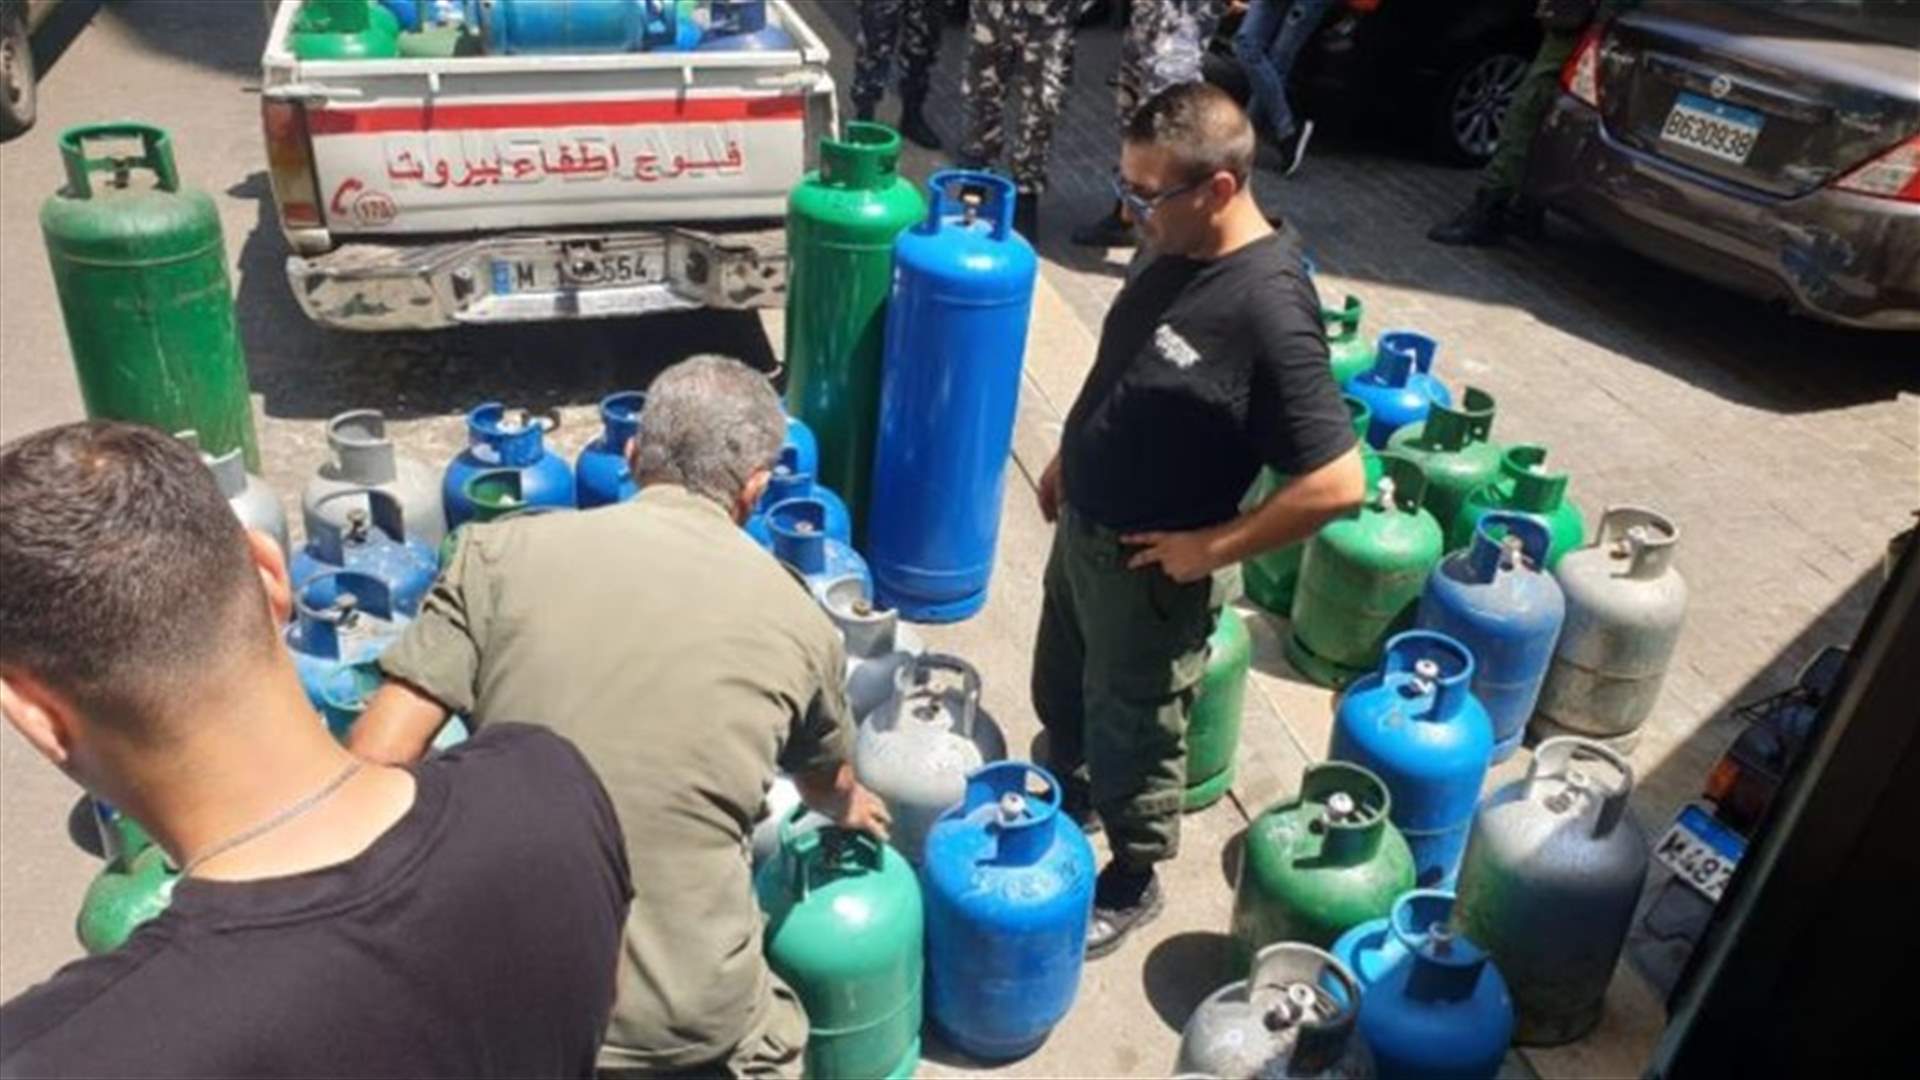 محافظ بيروت أمر بمصادرة كميات كبيرة من قوارير الغاز من داخل إحدى المحال في منطقة قريطم